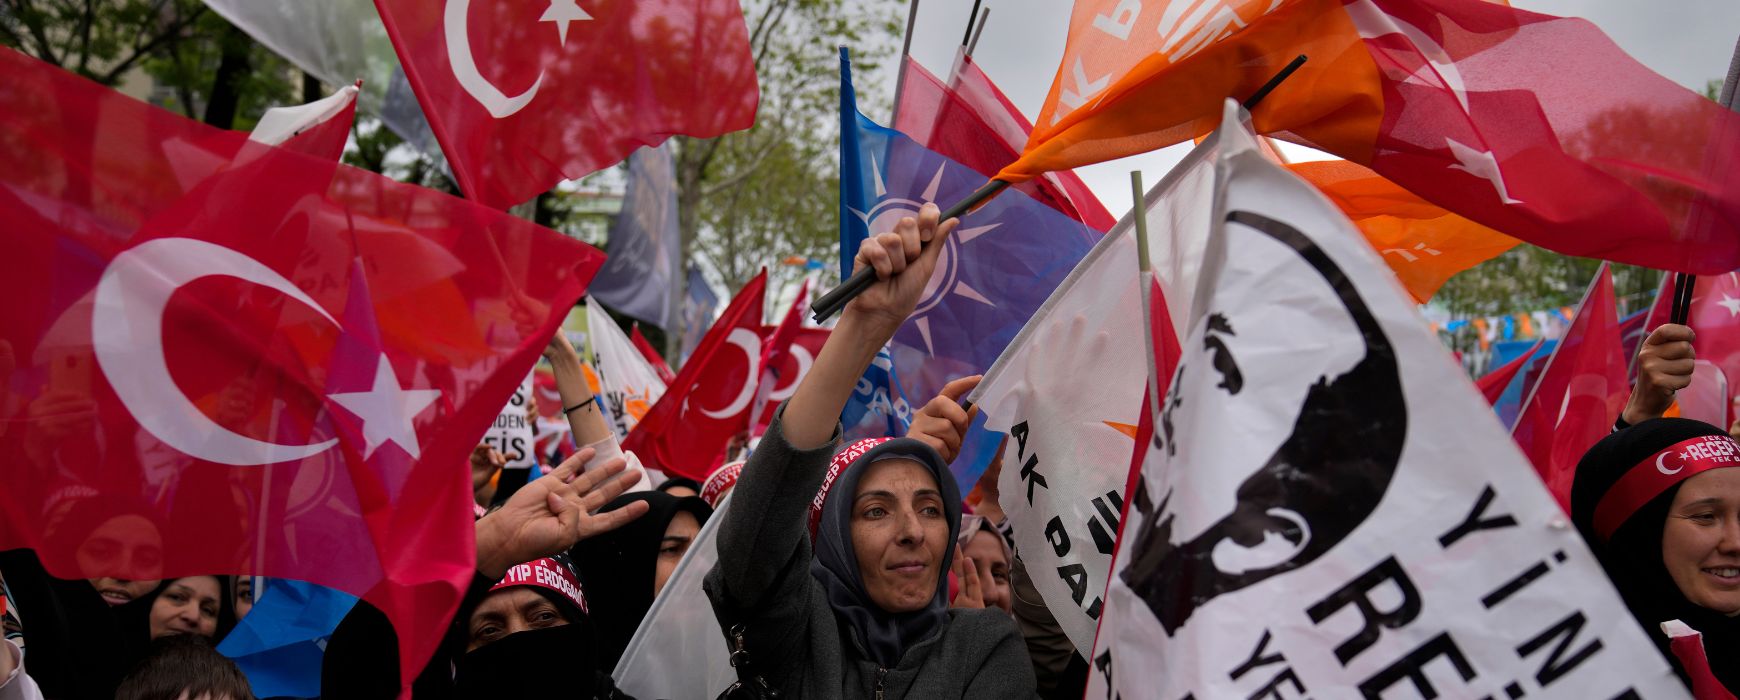 Εκλογές στην Τουρκία: Ποια είναι η ατζέντα των τριών συμμαχιών στα βασικά ζητήματα